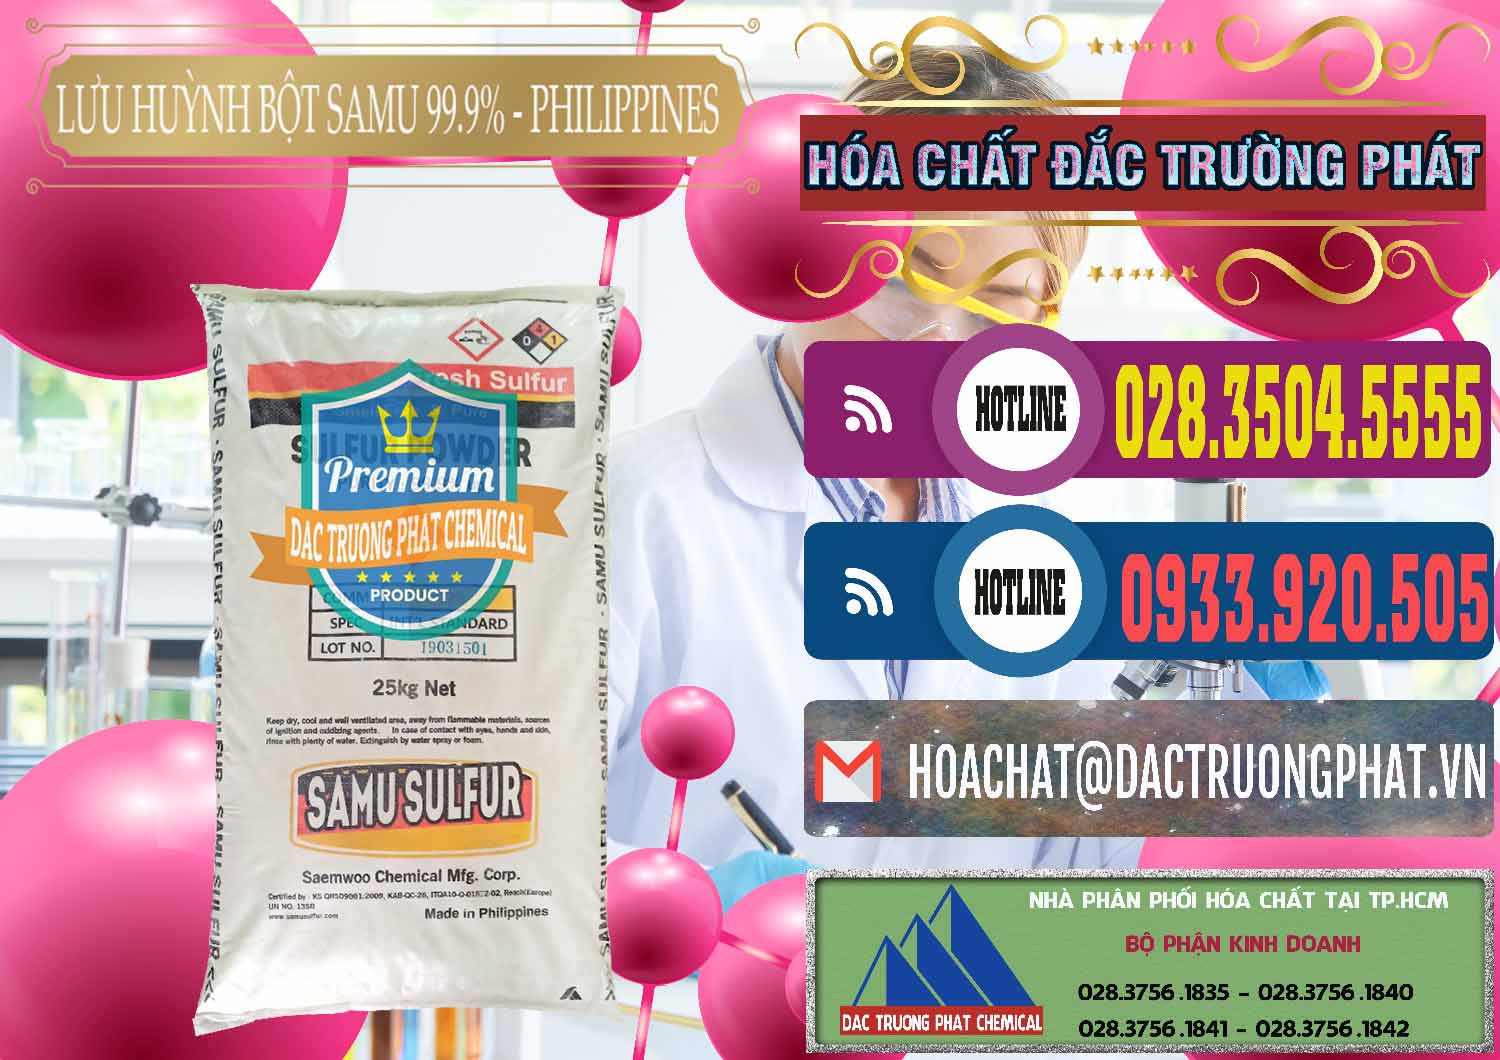 Cty chuyên cung cấp _ bán Lưu huỳnh Bột - Sulfur Powder Samu Philippines - 0201 - Cty cung cấp _ bán hóa chất tại TP.HCM - muabanhoachat.com.vn